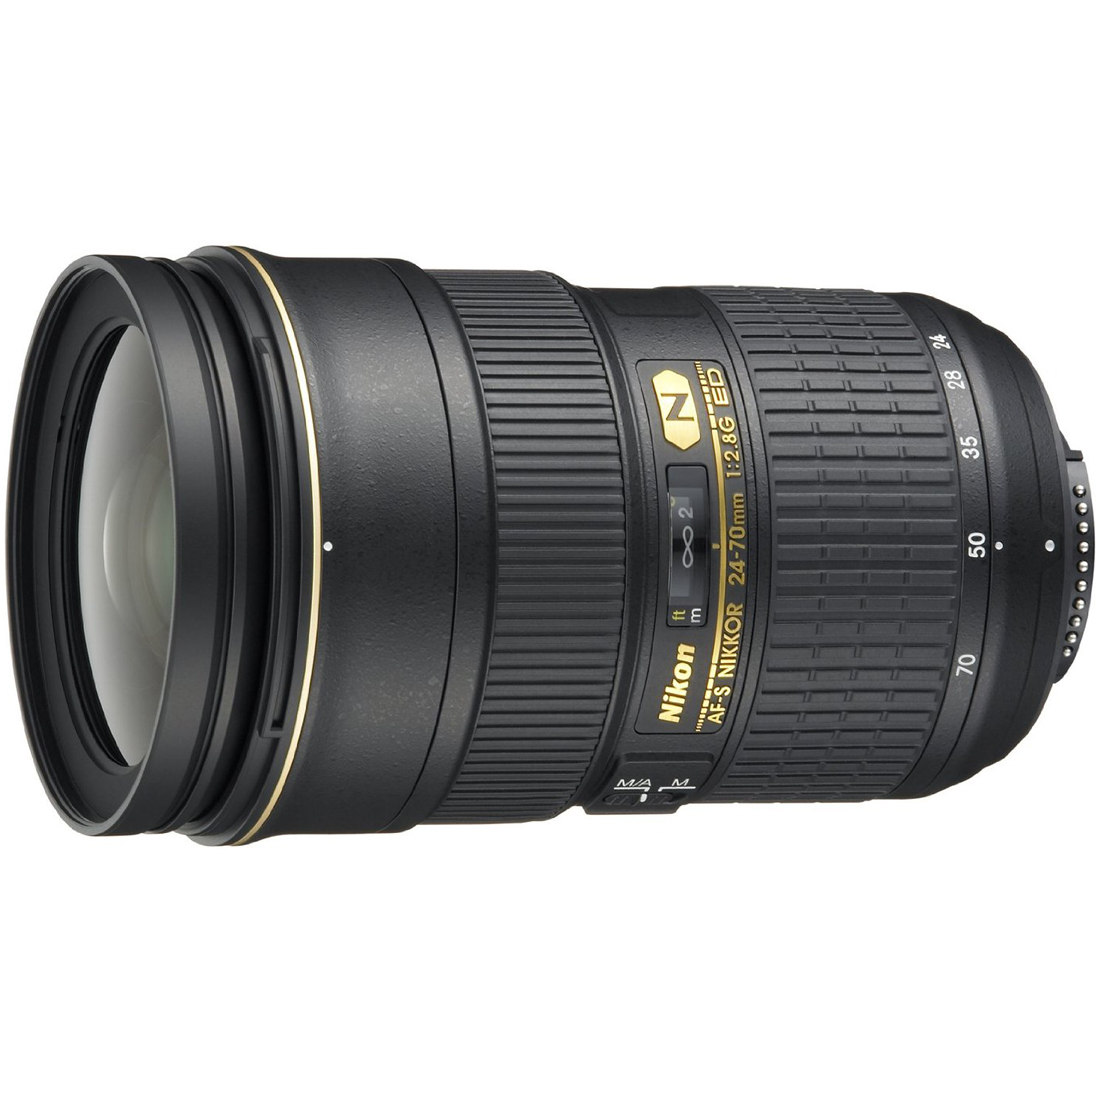 Nikon AF-S Nikkor 24-70mm f/2.8G ED Autofocus Lens (Black) - image 1 of 6